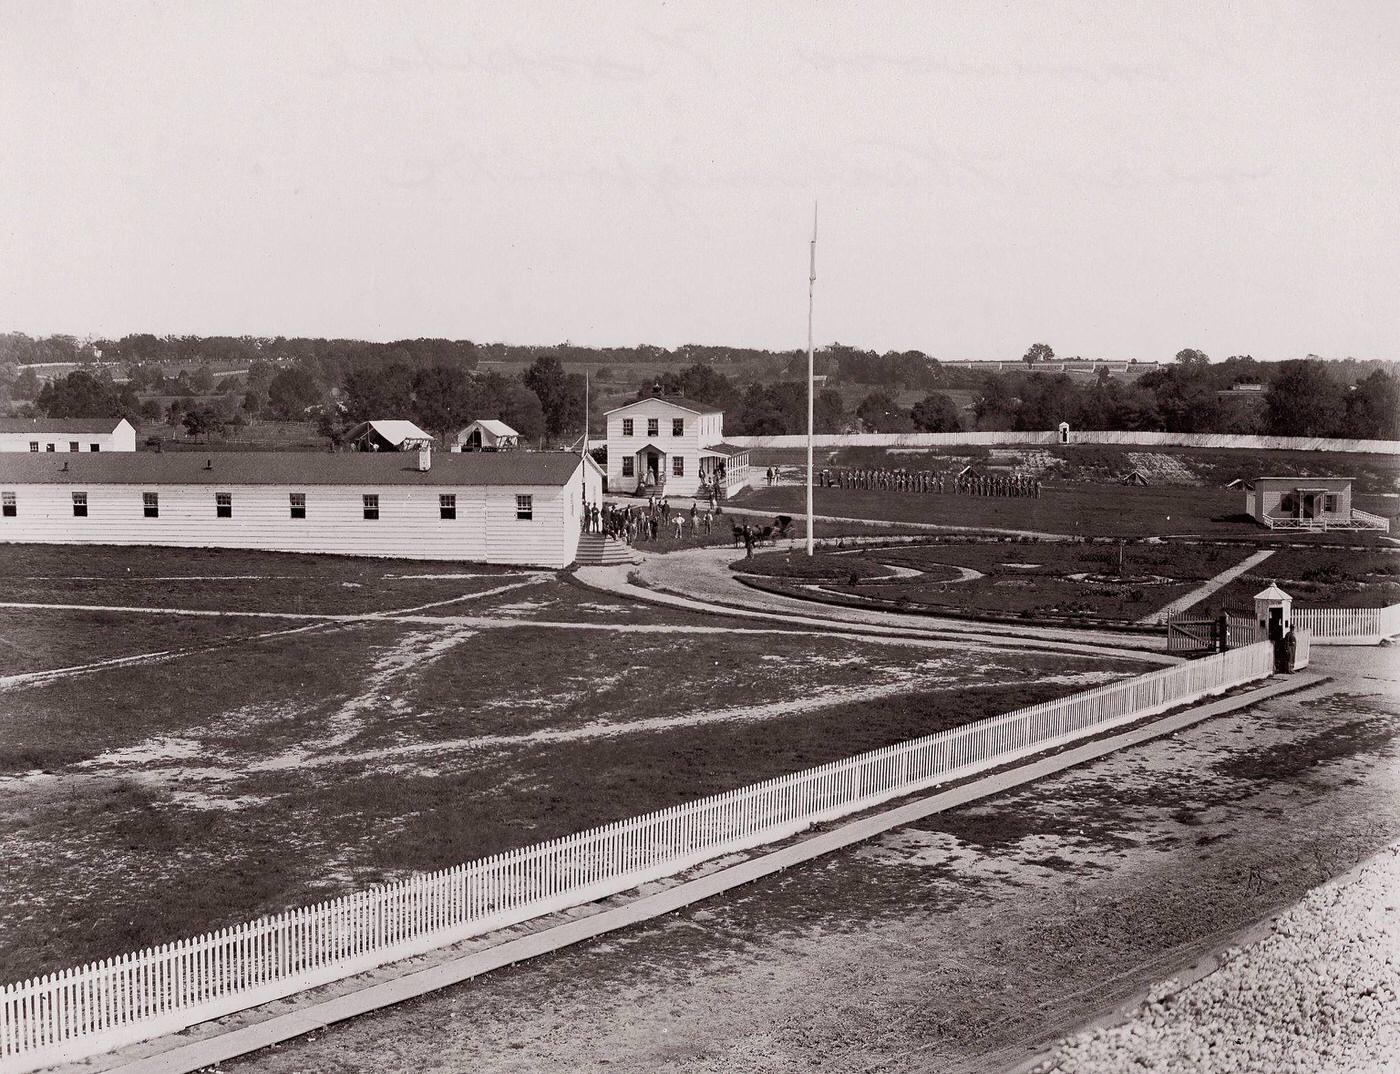 Washington Harewood Hospital, 1861